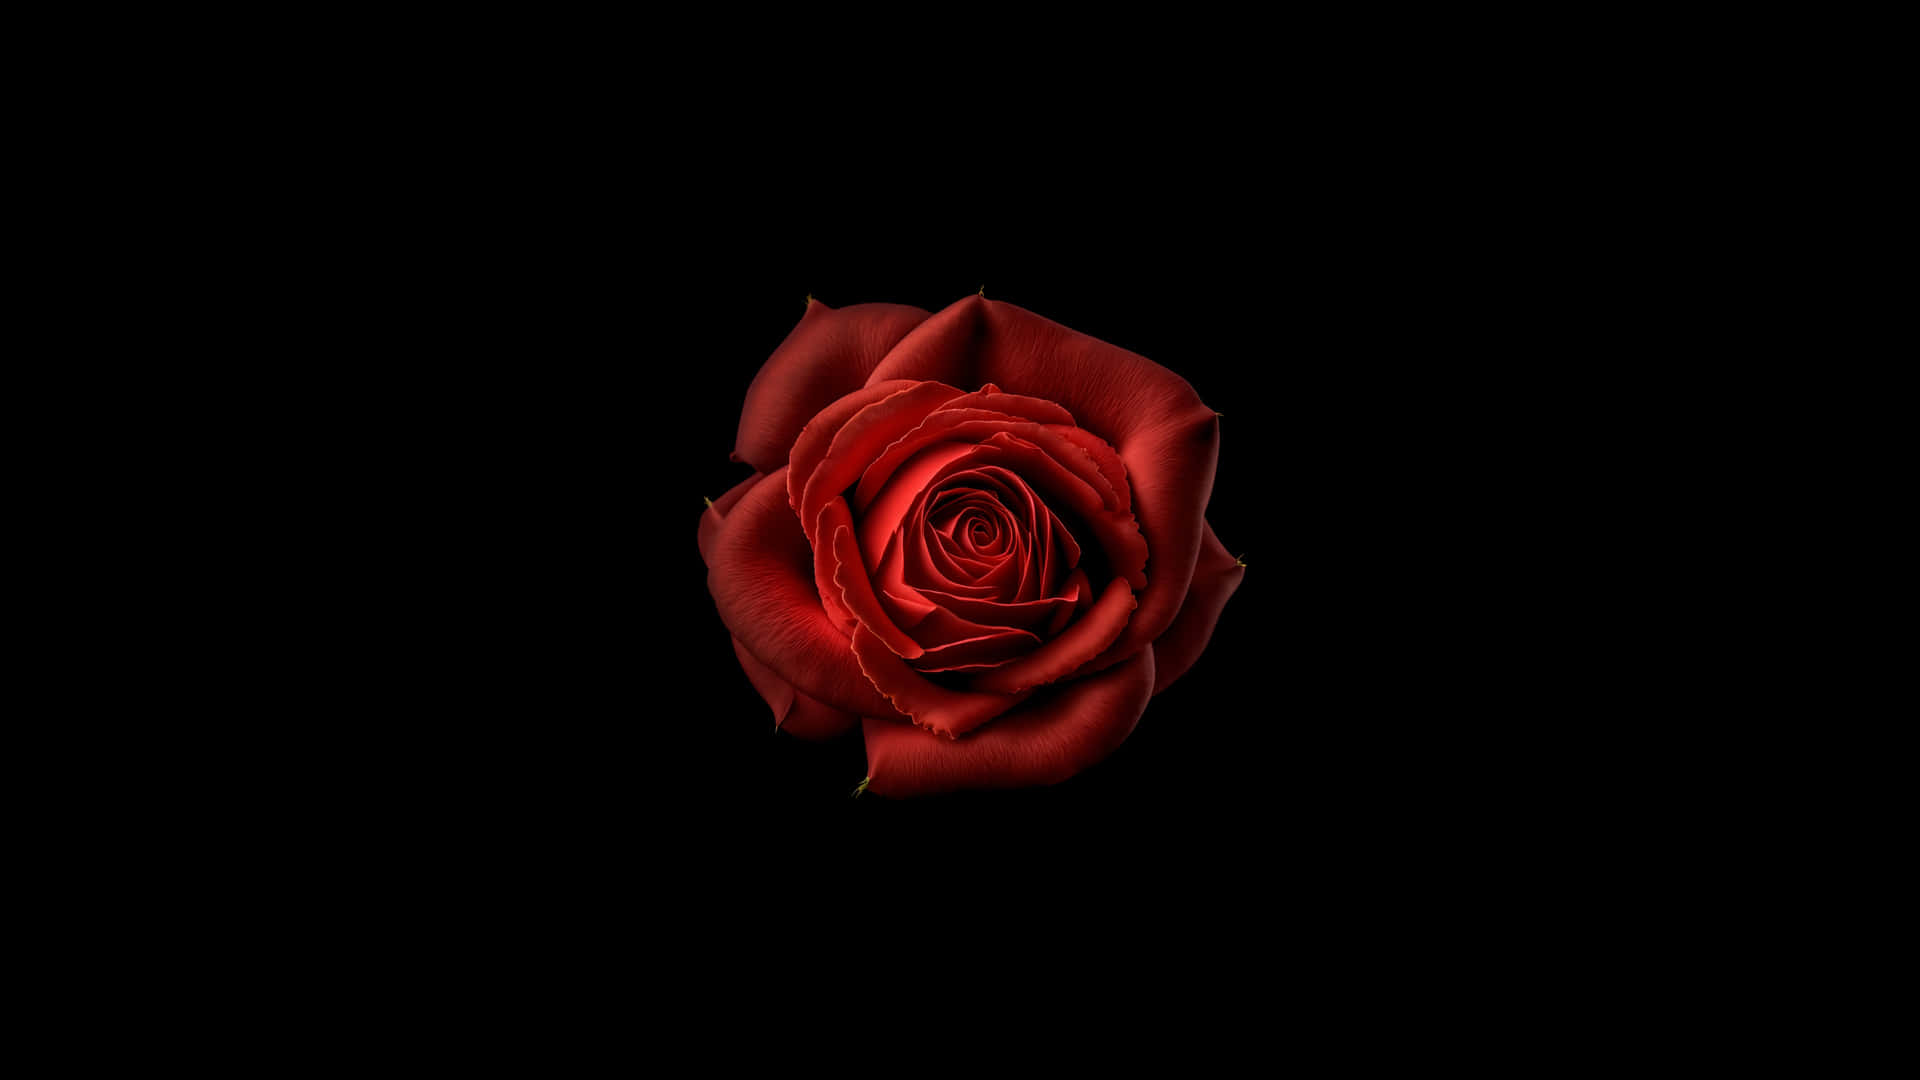 Red Rose Black Background4 K Wallpaper